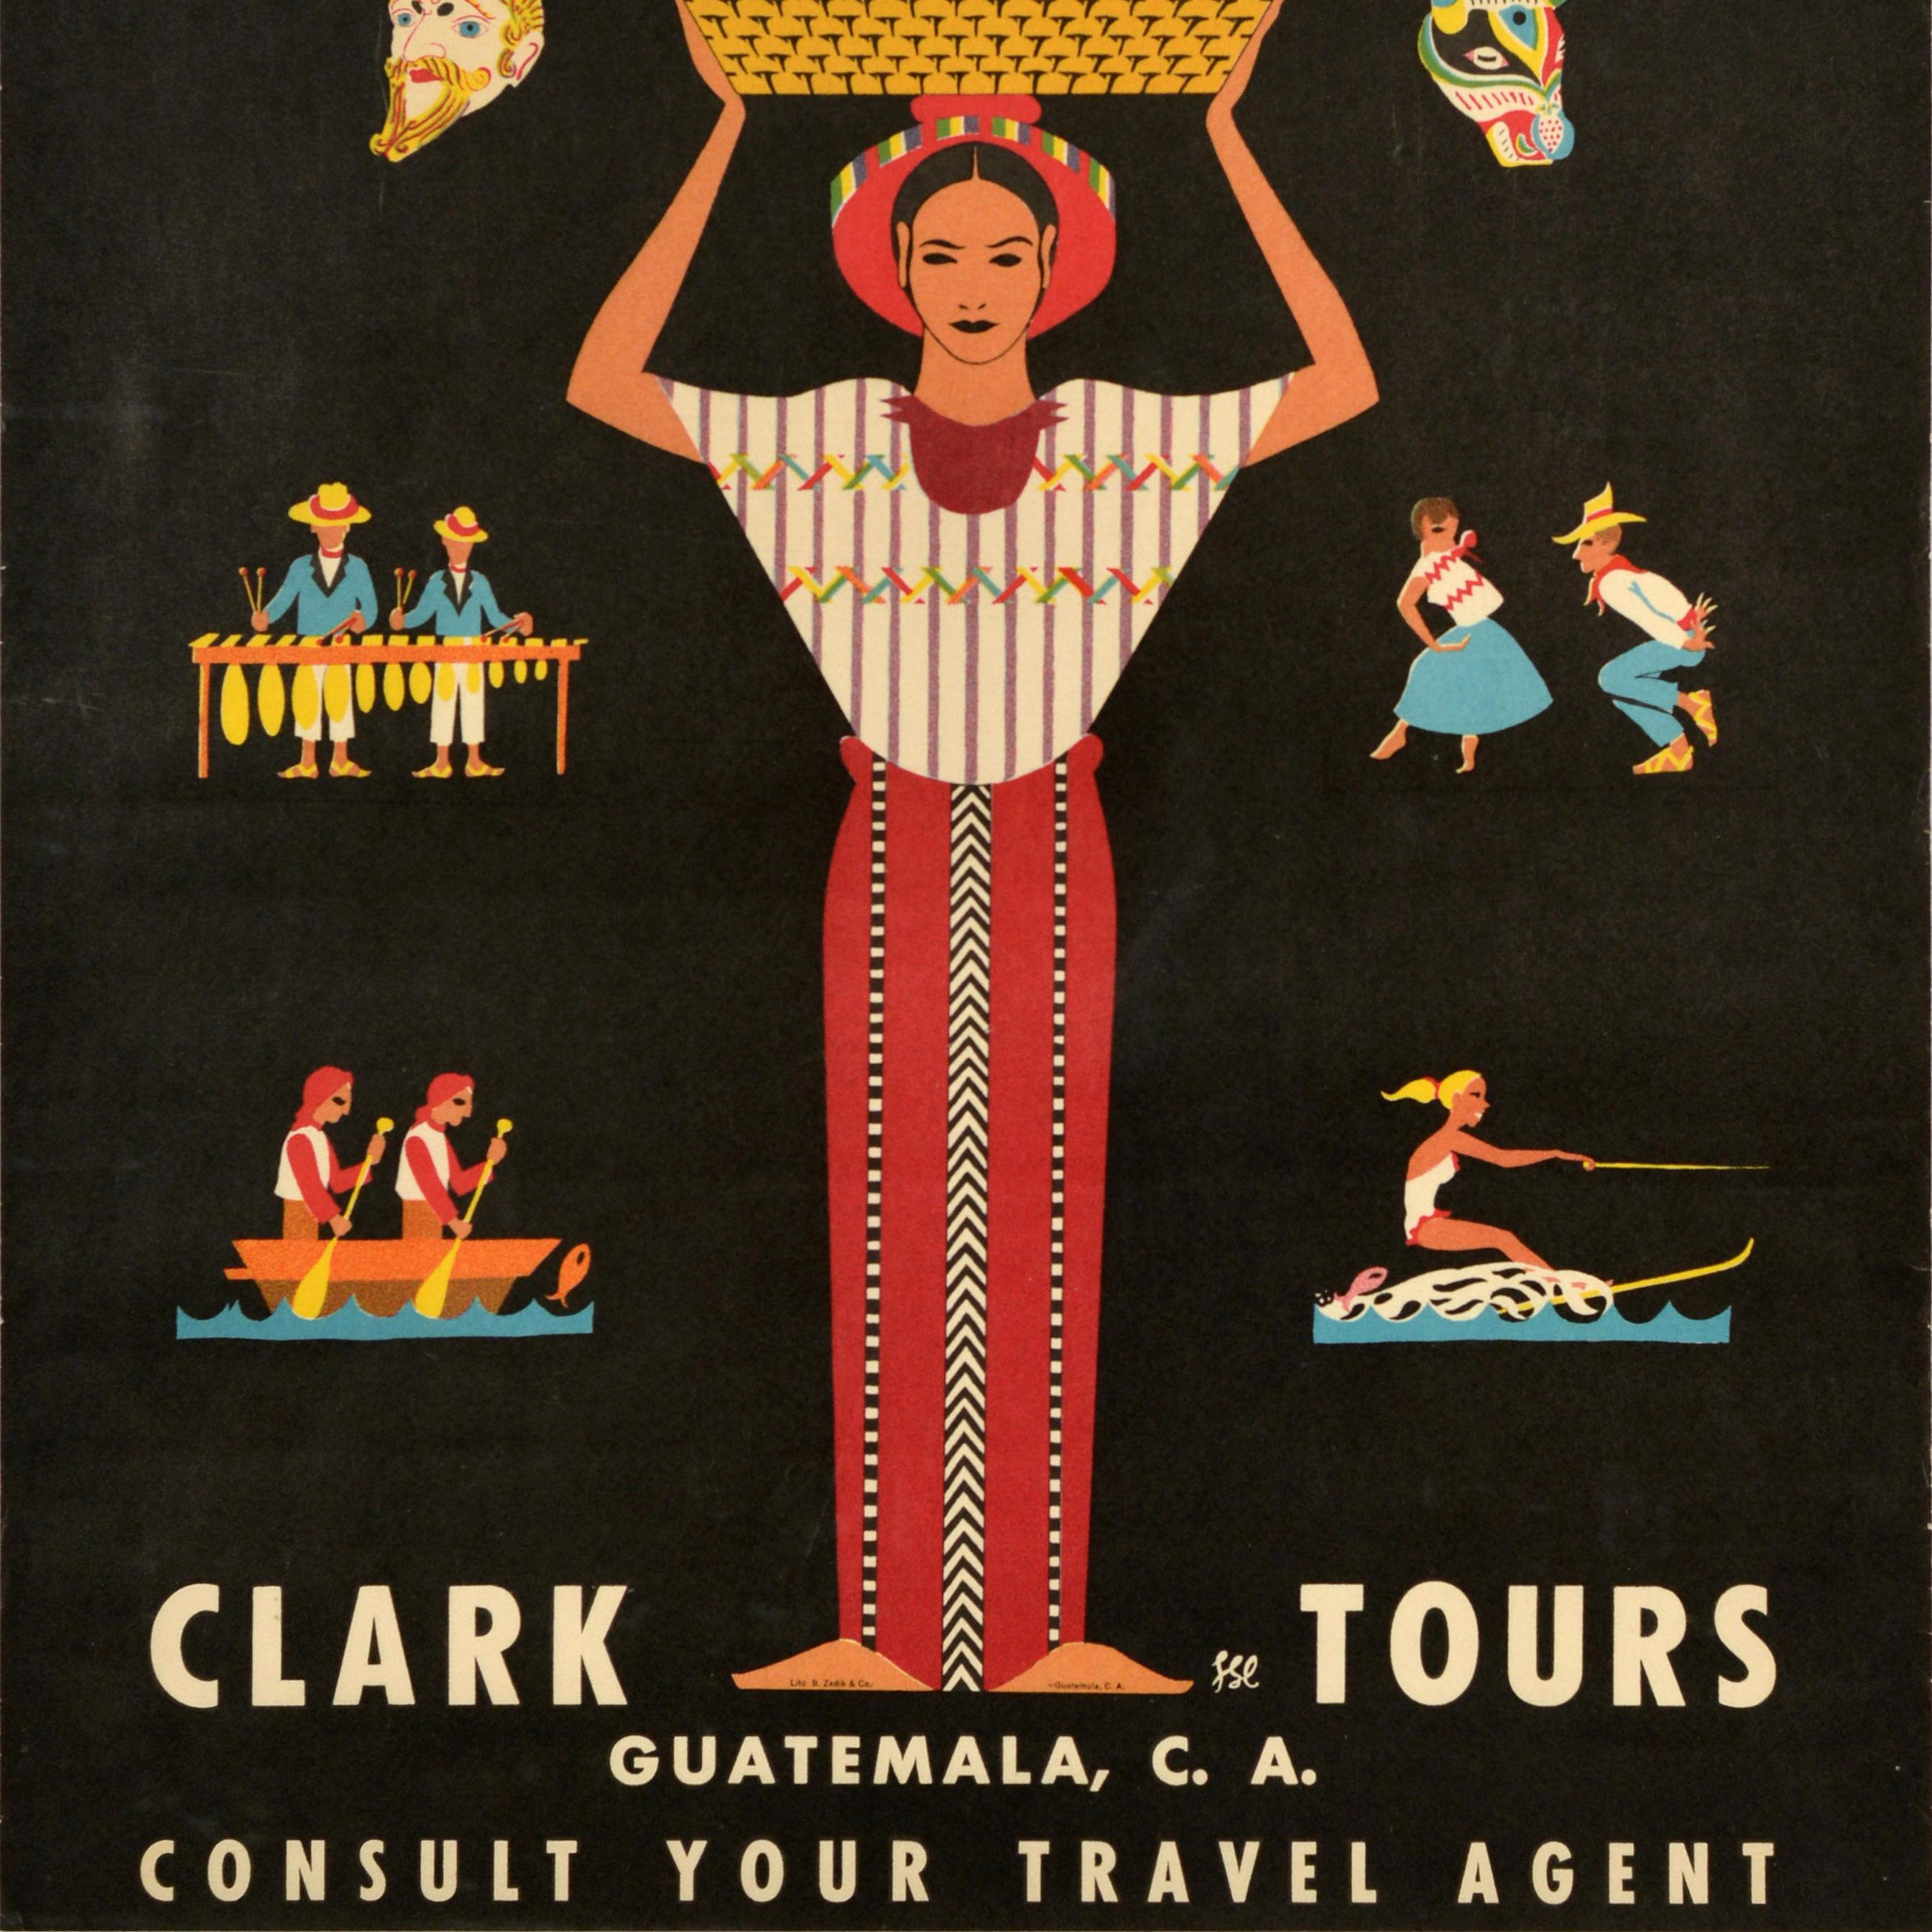 Original Vintage-Reise-Werbeplakat - Guatemala Clark Tours - mit einer farbenfrohen Illustration einer Dame, die einen Obstkorb auf ihrem Hut trägt, umgeben von kleineren Bildern, die musizierende Menschen und ein Boot mit einem hochspringenden